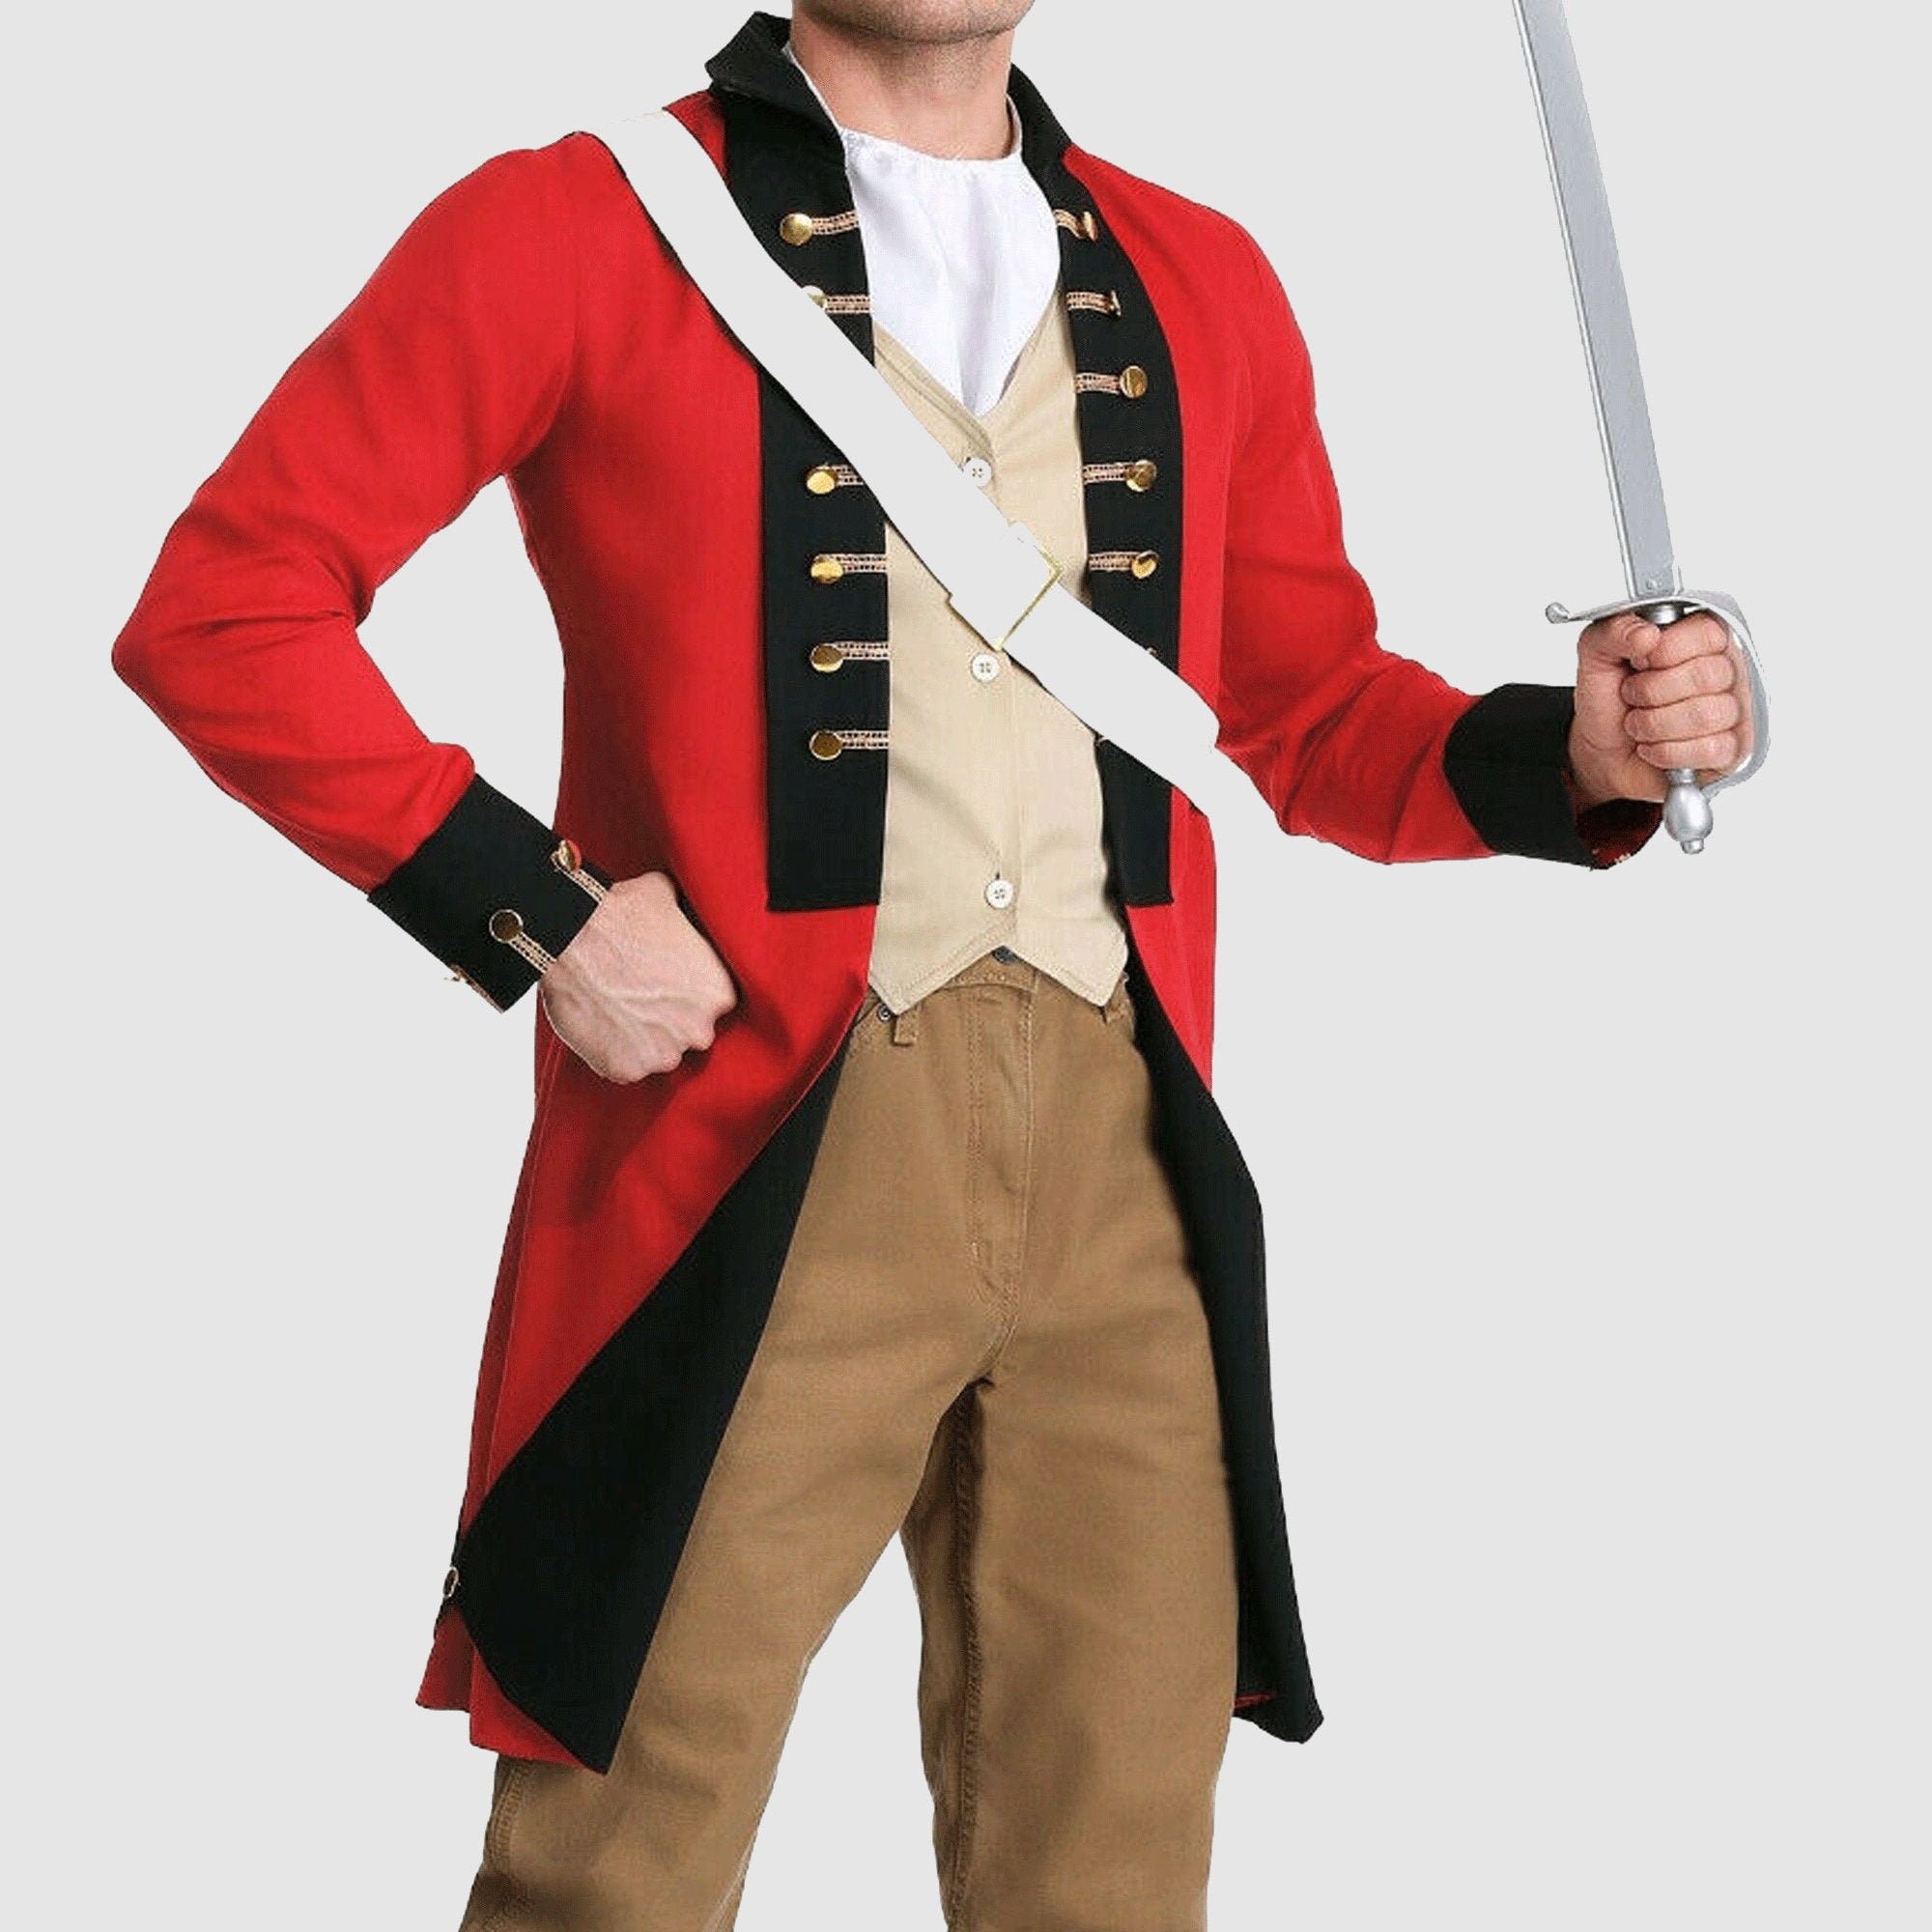 Hombre Lana militar British Red Costume jacket,Mens Fashion Hussar Costume,Accesorios no incluidos en el precio Ropa Ropa para hombre Disfraces 